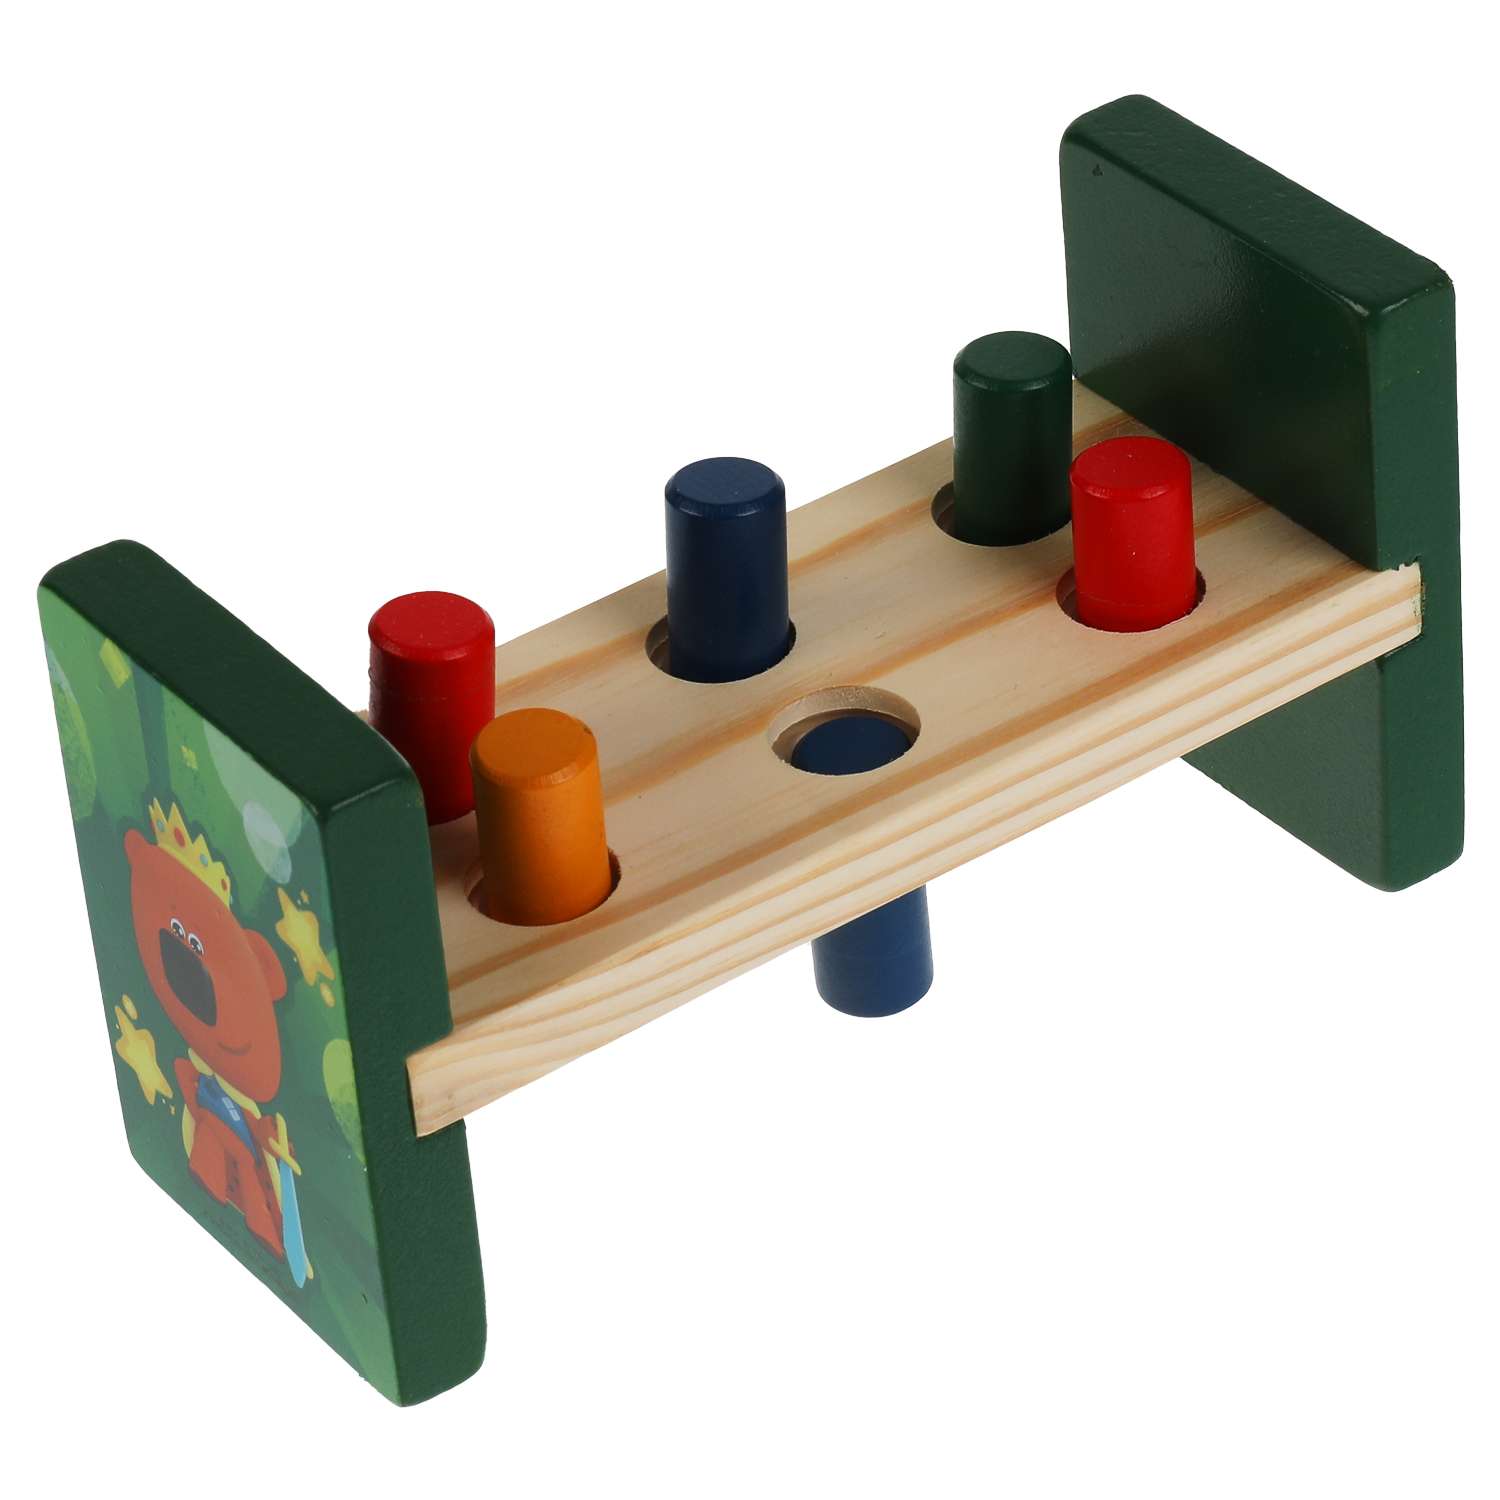 Игрушка деревянная Буратино Ми-ми-мишки стучалка 6 цилиндров - фото 3